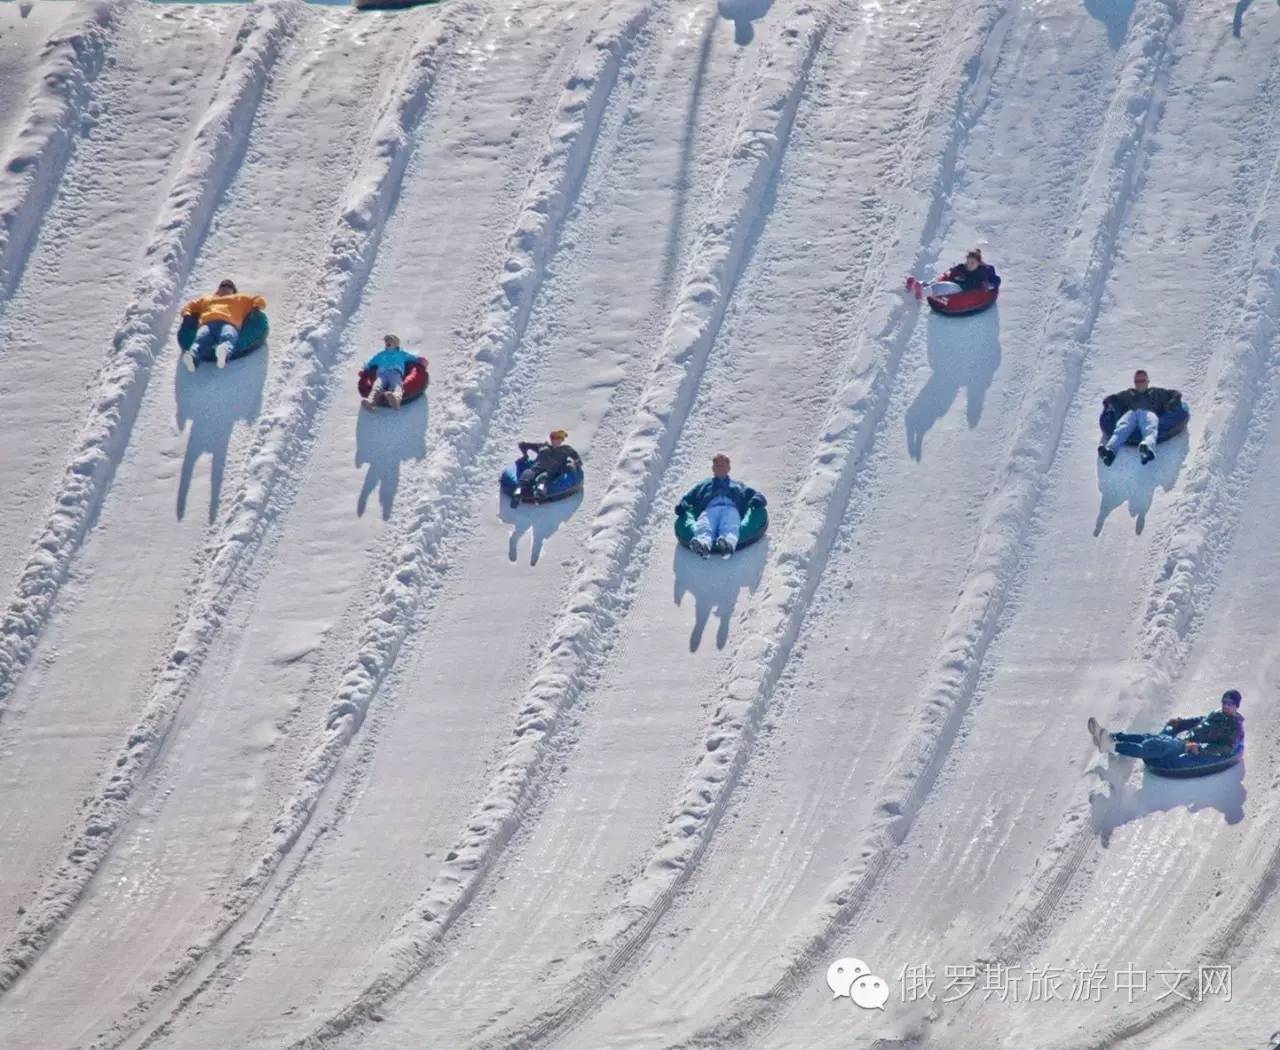 滑雪圈,俄罗斯冬天里最受欢迎的活动,公园,游乐场,还有小雪坡,好多